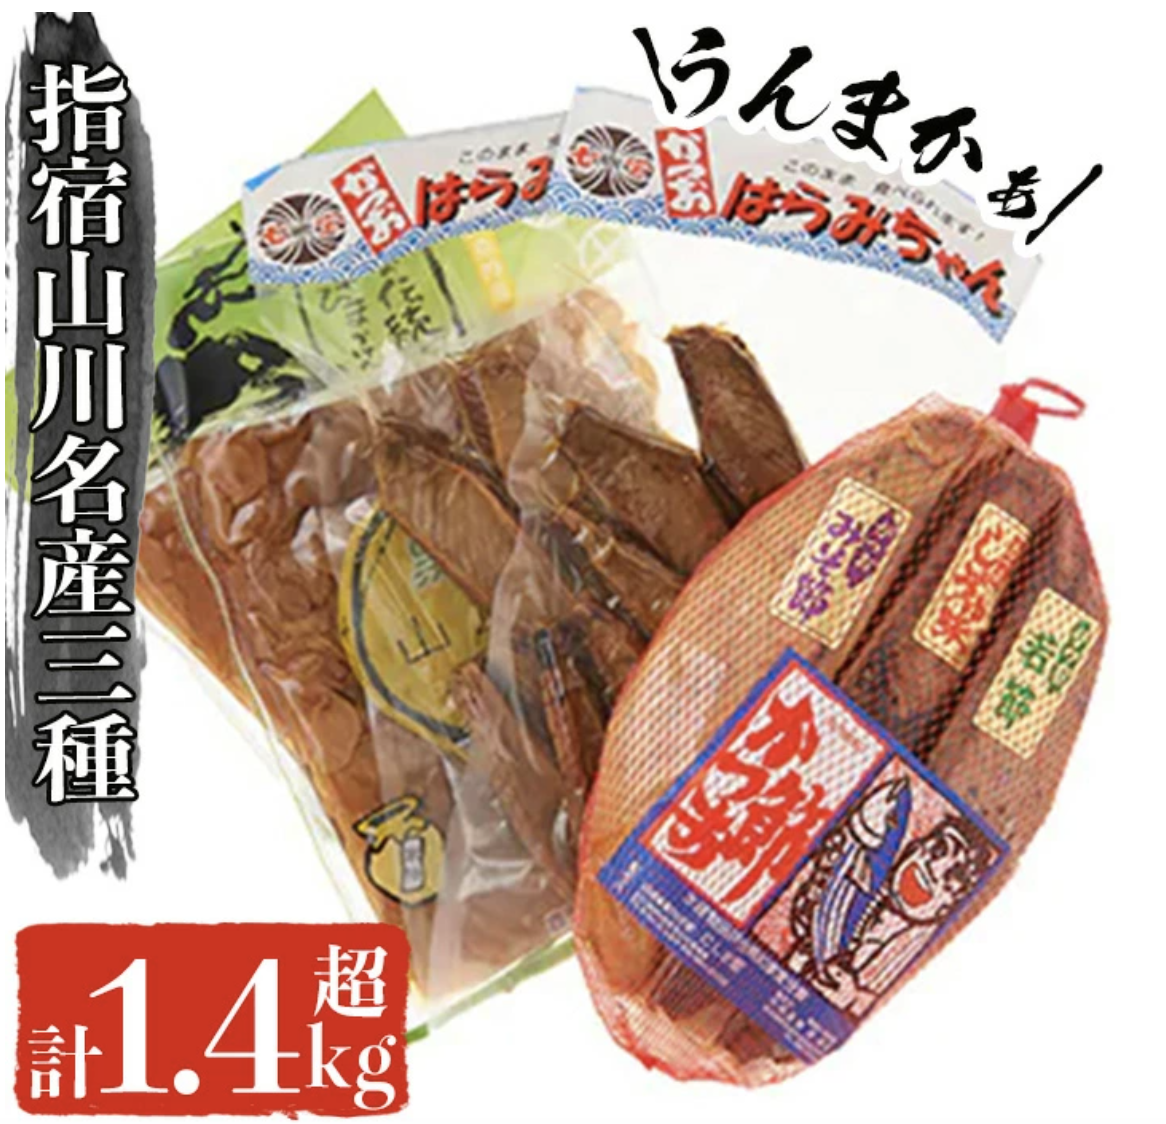 指宿市山川の名産品3点セット！山川漬物・かつお燻製・腹皮(3種・計1.4kg以上) イメージ